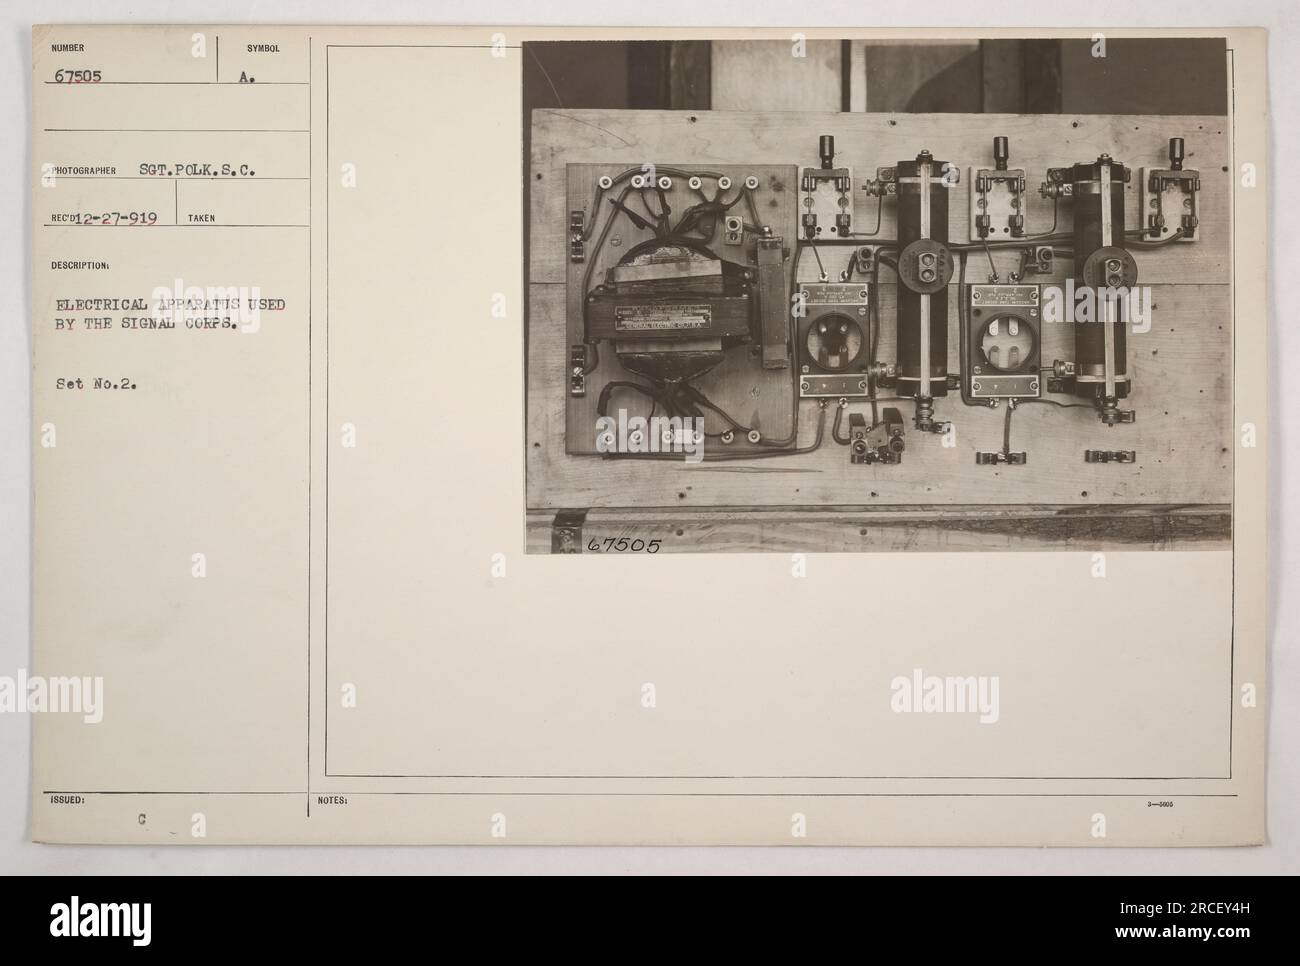 Ein Foto, das elektrische Geräte zeigt, die das Signalkorps im Ersten Weltkrieg benutzte. Dieses Set, das als Set Nr. 2 bezeichnet wird, hat die Nummer 67505 und wurde vom Fotografen Sgt. Polk aufgenommen. Diese elektrischen Geräte wurden dem Signalkorps für ihre Operationen übergeben. Stockfoto